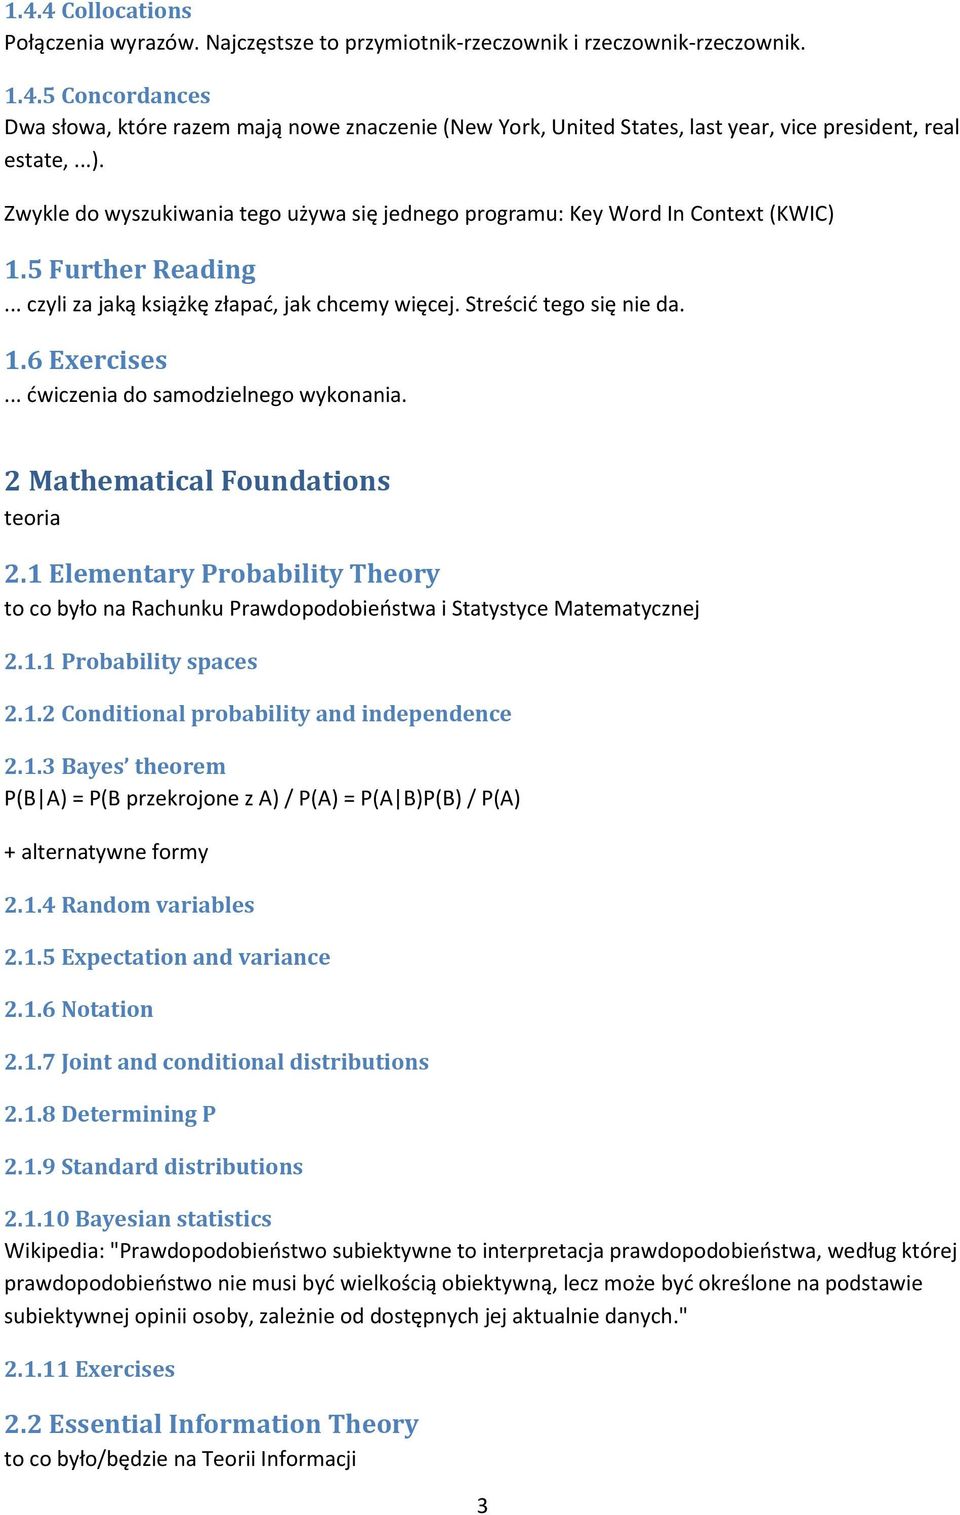 .. dwiczenia do samodzielnego wykonania. 2 Mathematical Foundations teoria 2.1 Elementary Probability Theory to co było na Rachunku Prawdopodobieostwa i Statystyce Matematycznej 2.1.1 Probability spaces 2.